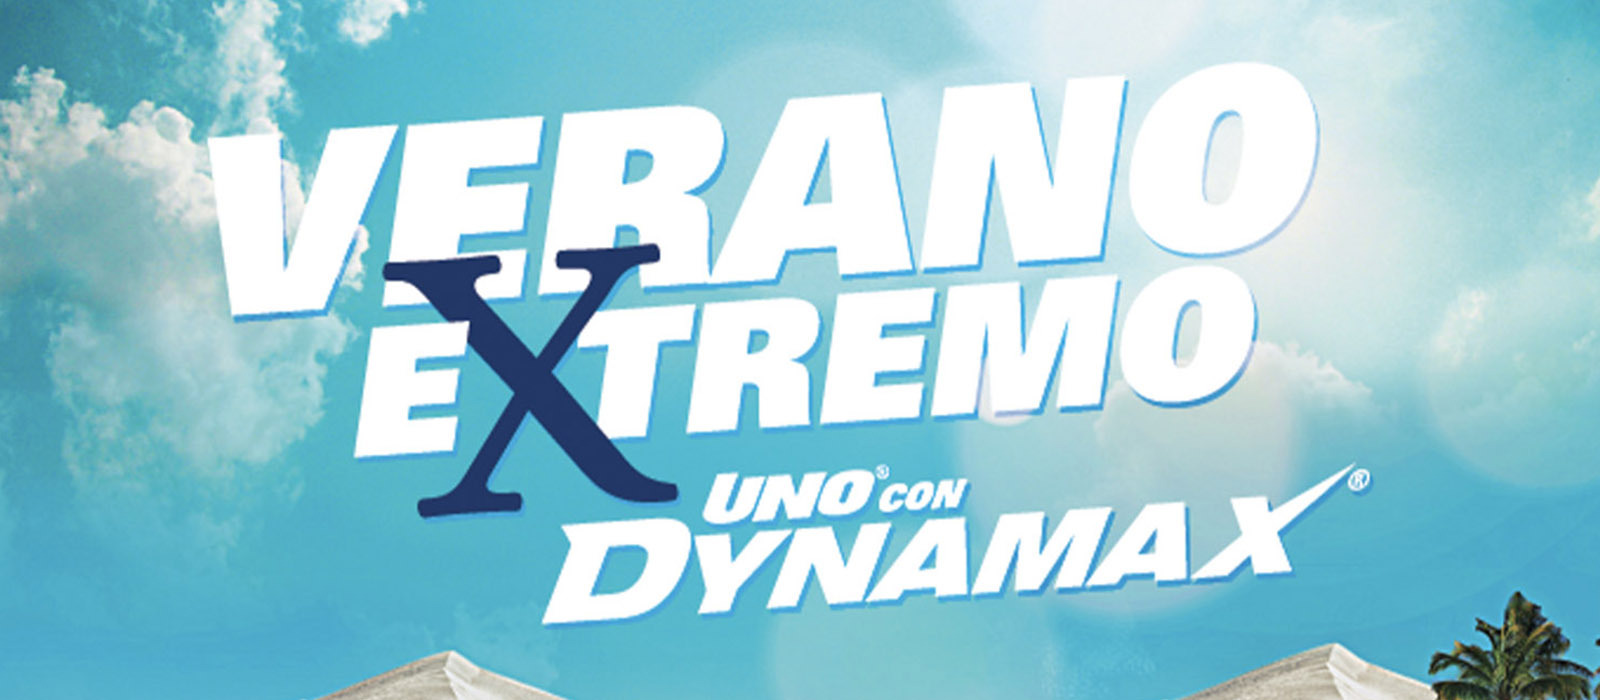 Honduras: Finalizó el Verano Extremo UNO con Dynamax